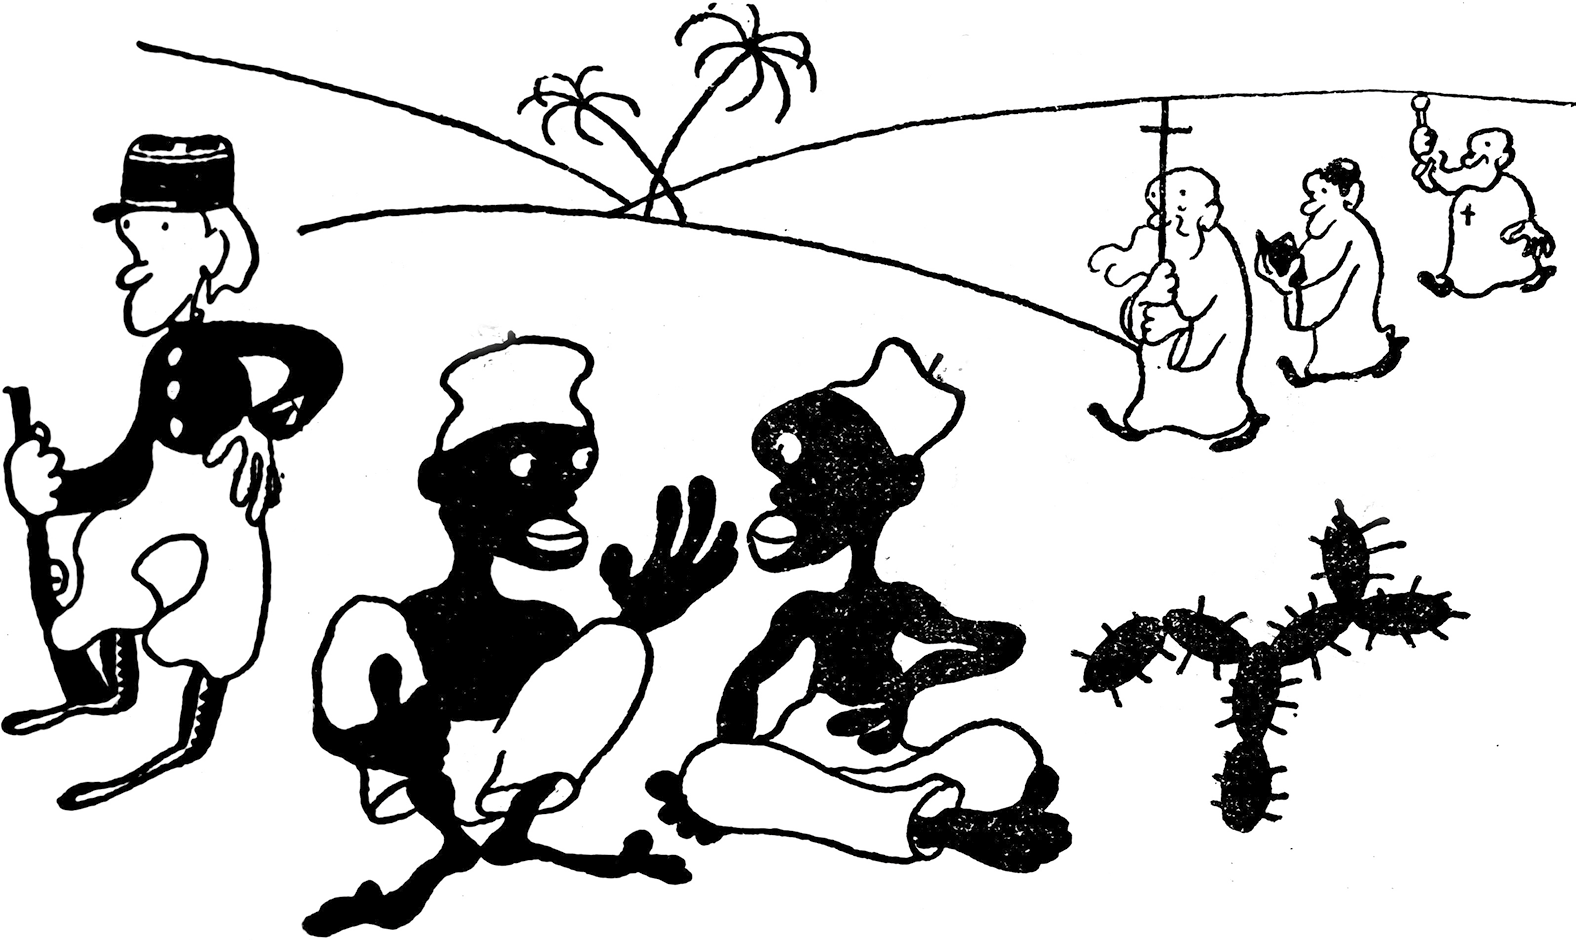 Caricatura em preto e branco. Duas pessoas negras sentadas ao lado de um cacto. À esquerda, um soldado branco de calça branca, blusa e chapéu escuros, carregando uma arma. Ao fundo, três homens com vestes clericais caminham pelas dunas. Um deles carrega um grande crucifixo.